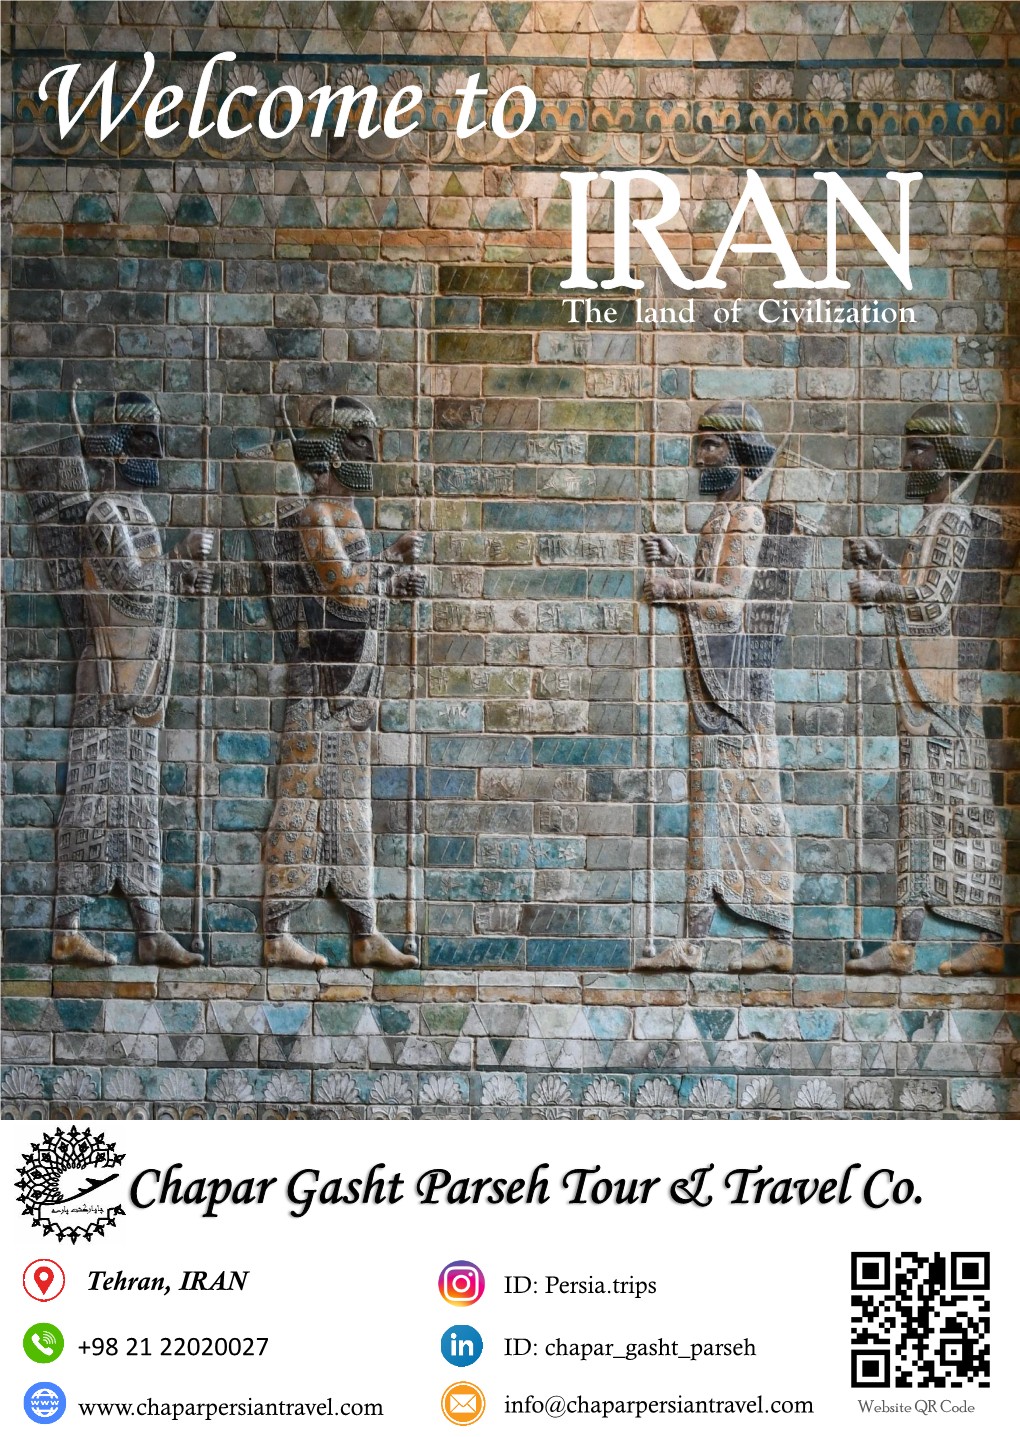 Chapar Gasht Parseh Tour & Travel